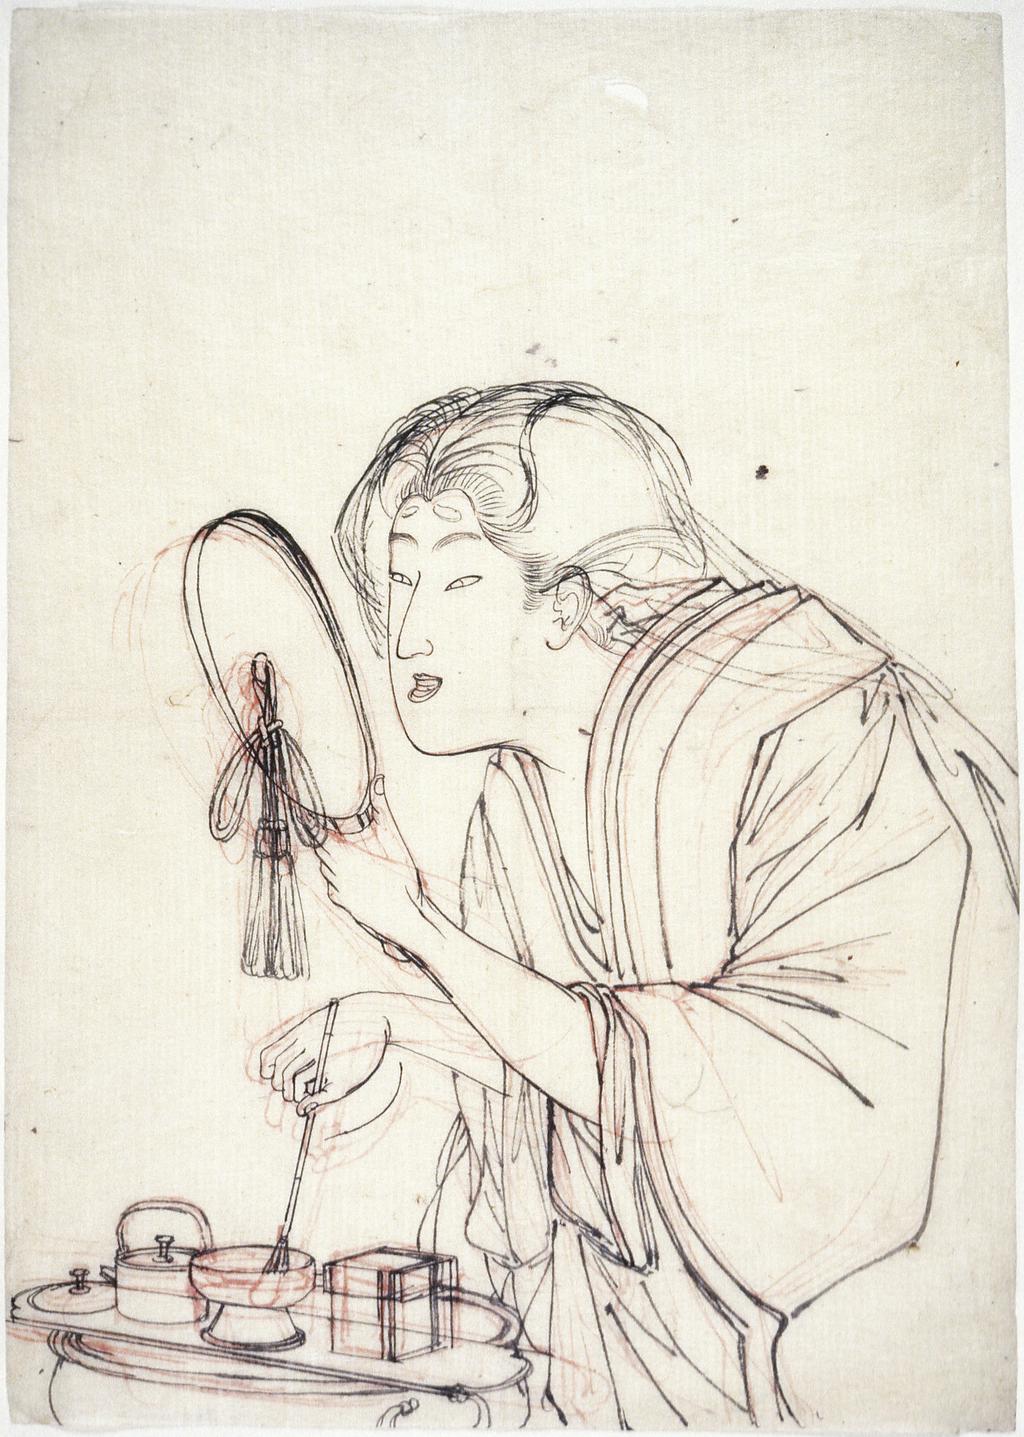 An image of A woman applying make-up. Yoshitoshi, Tsukioka (Japanese, 1839-1892). Red and black ink, 1800-1900. 